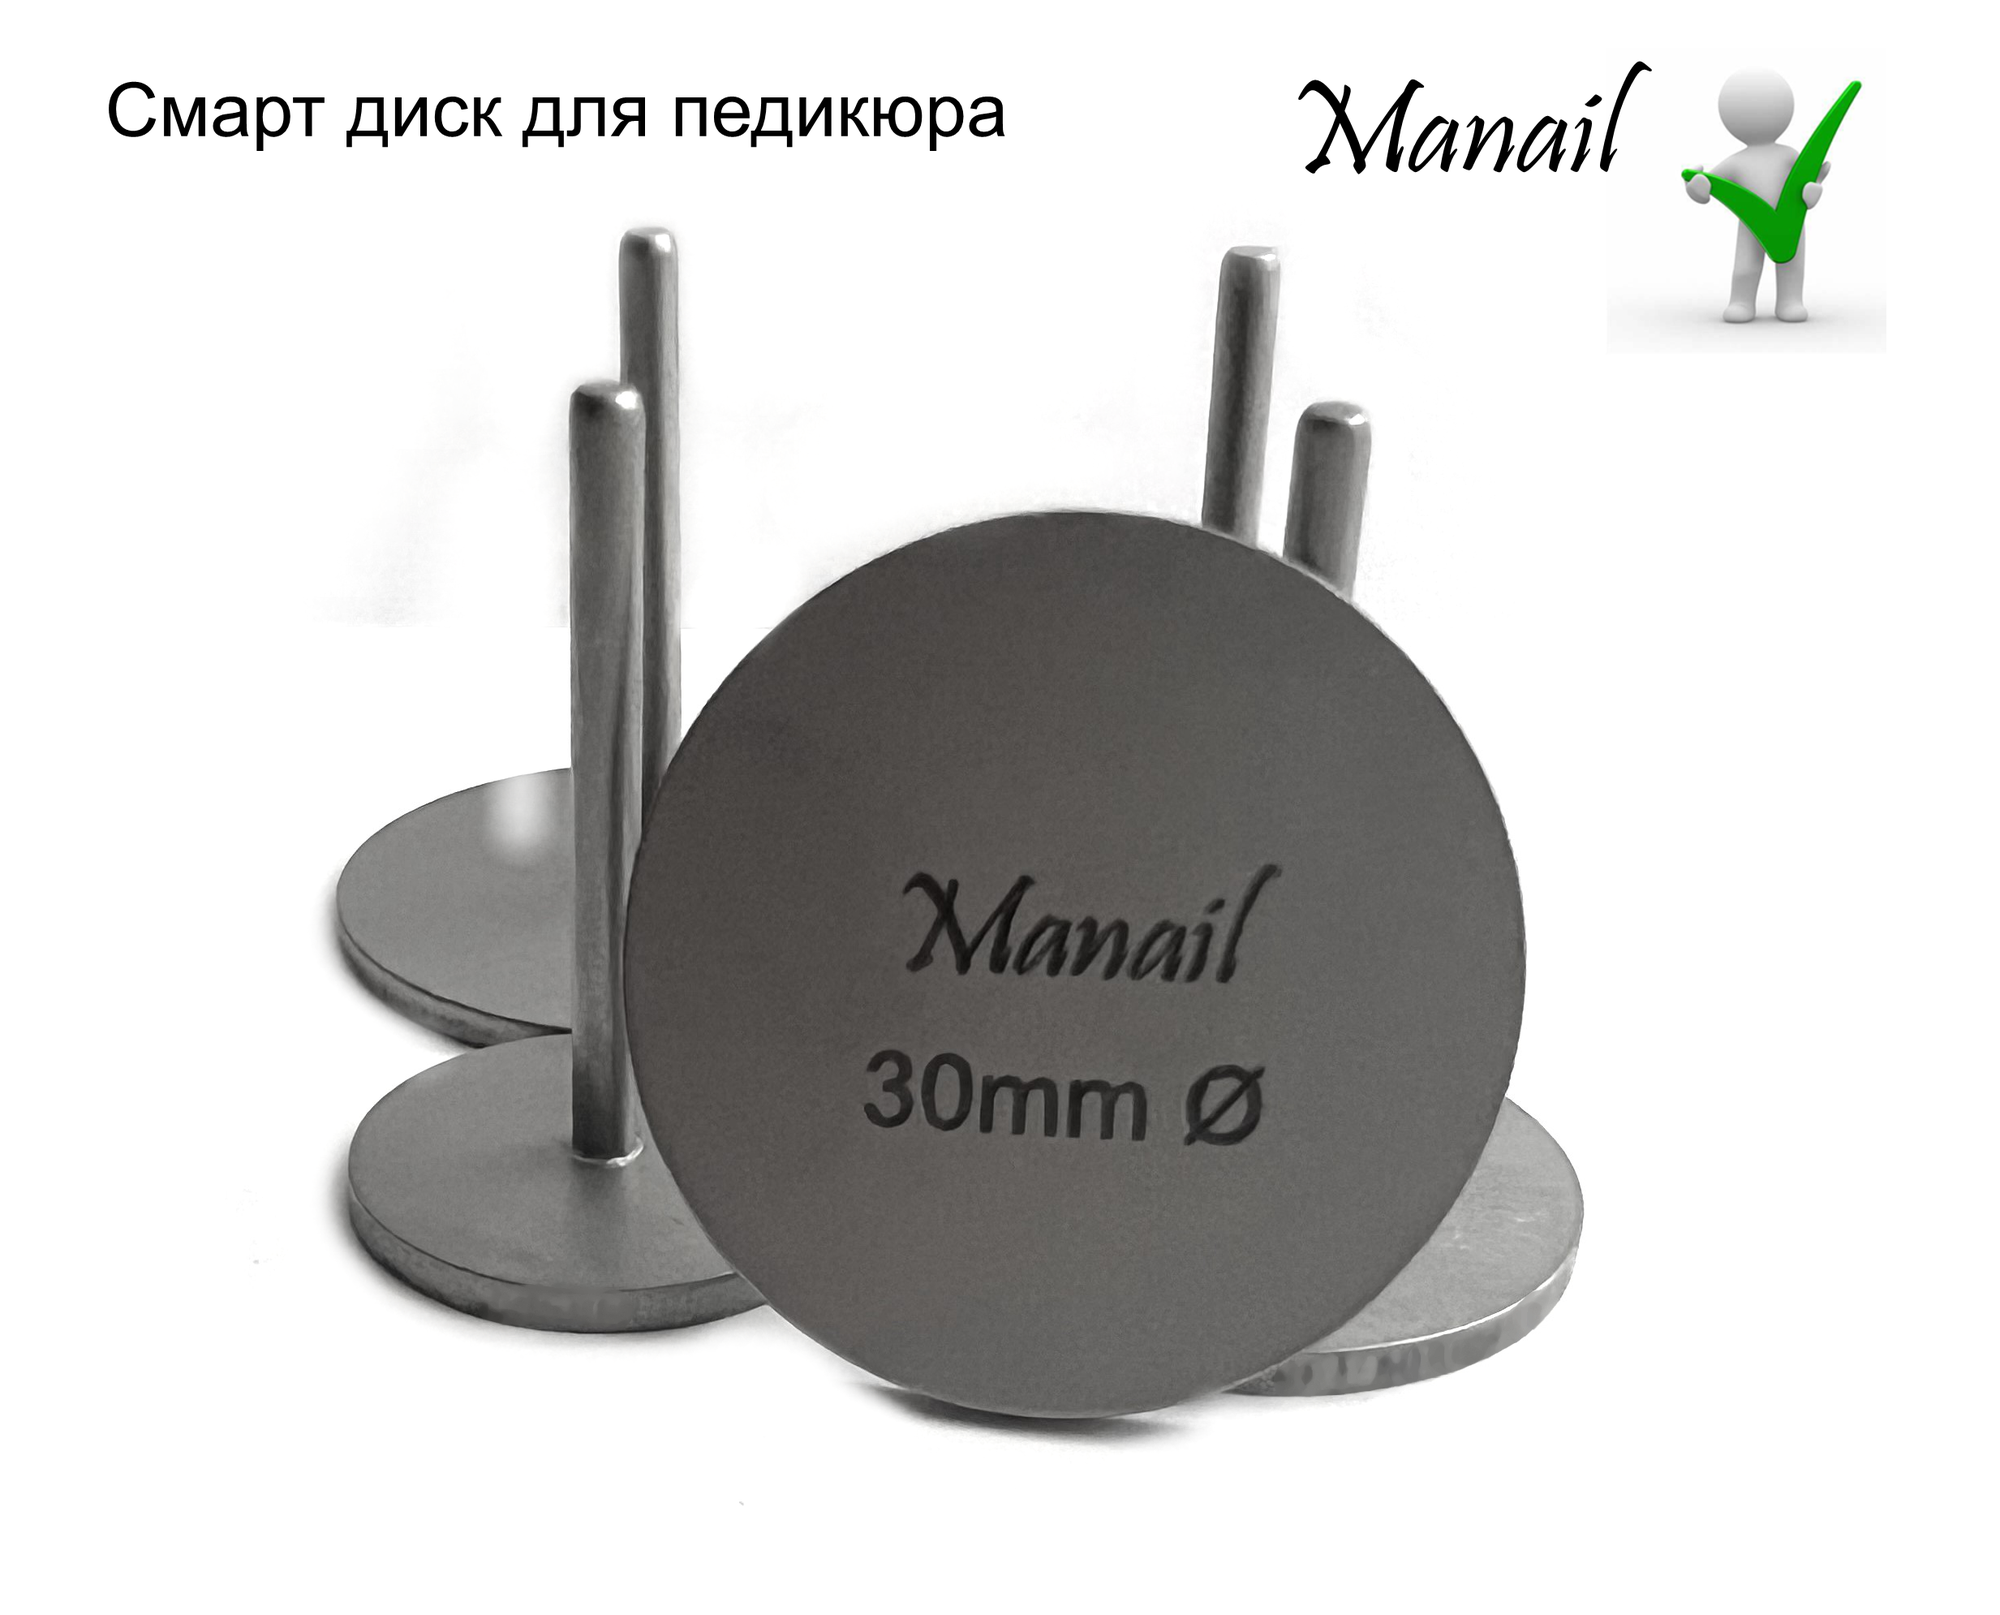 Смарт диск Manail для педикюра, диаметр 30 мм,